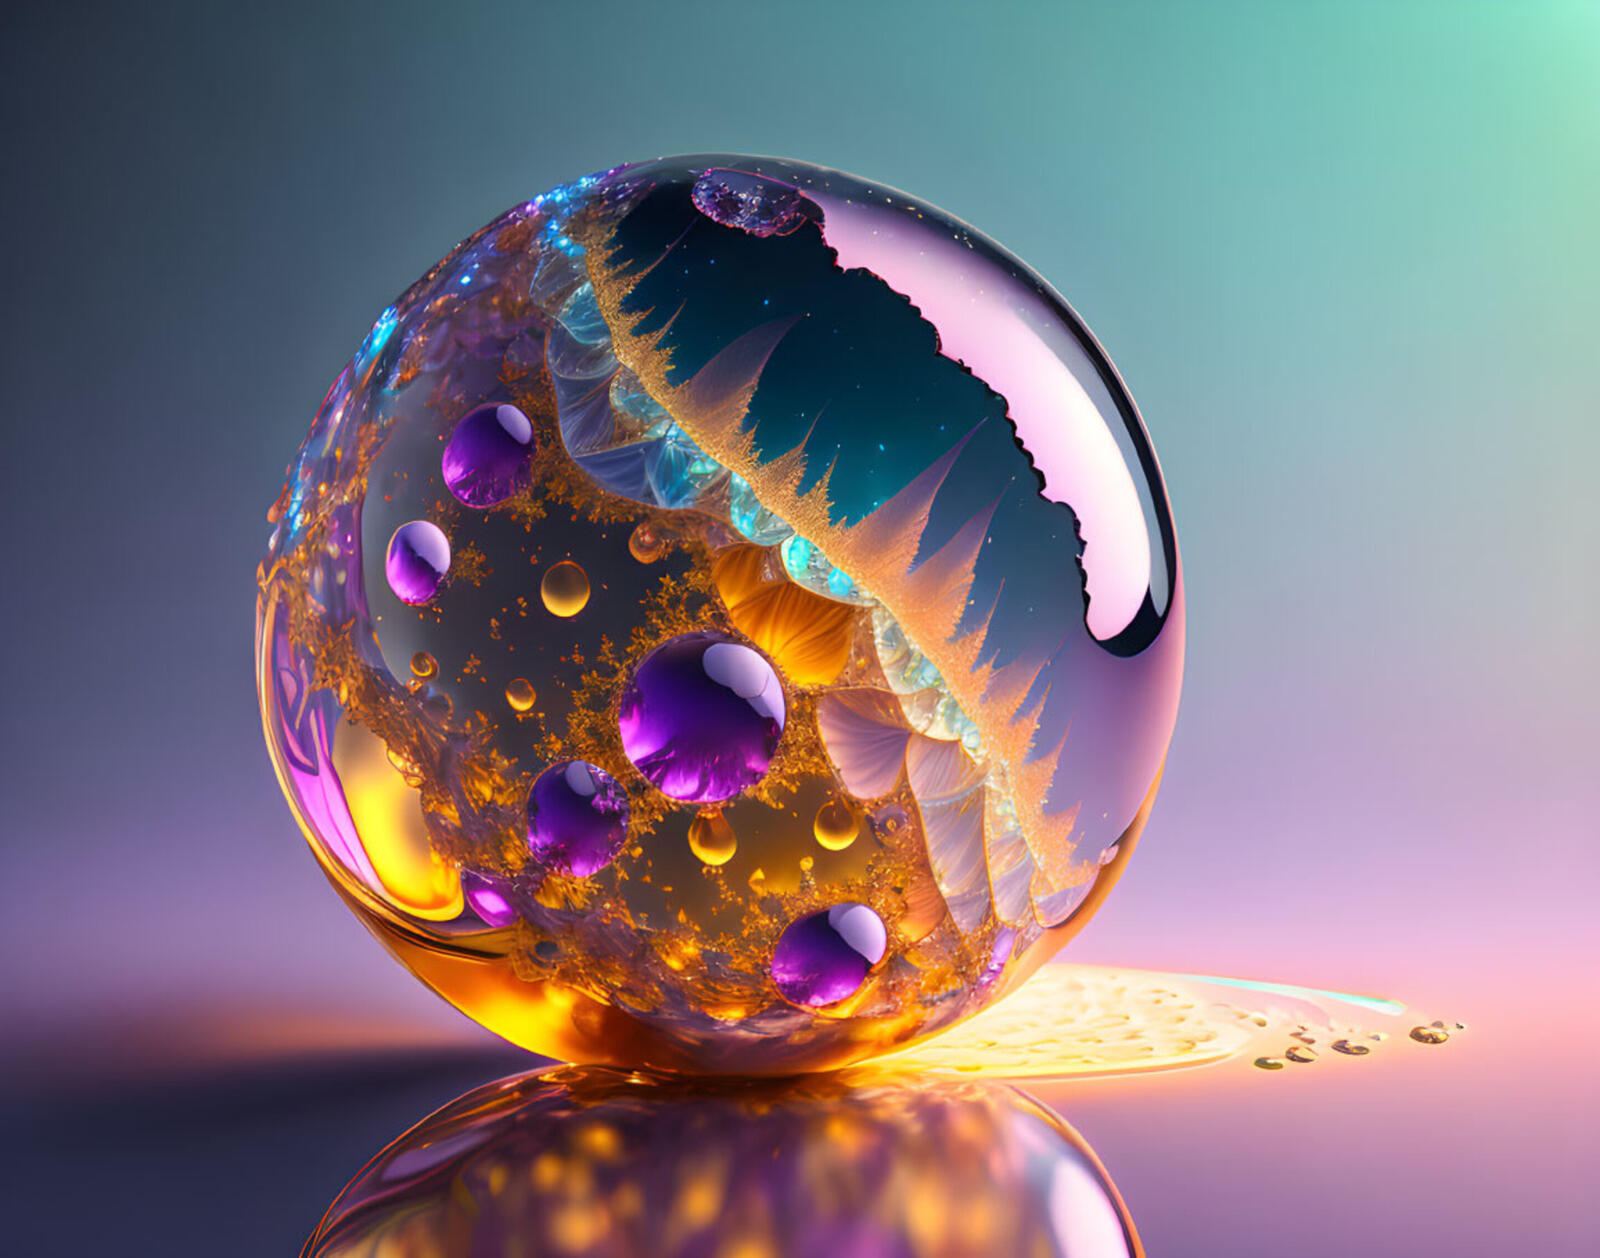 Бесплатное фото Стеклянный шар с цветными узорами